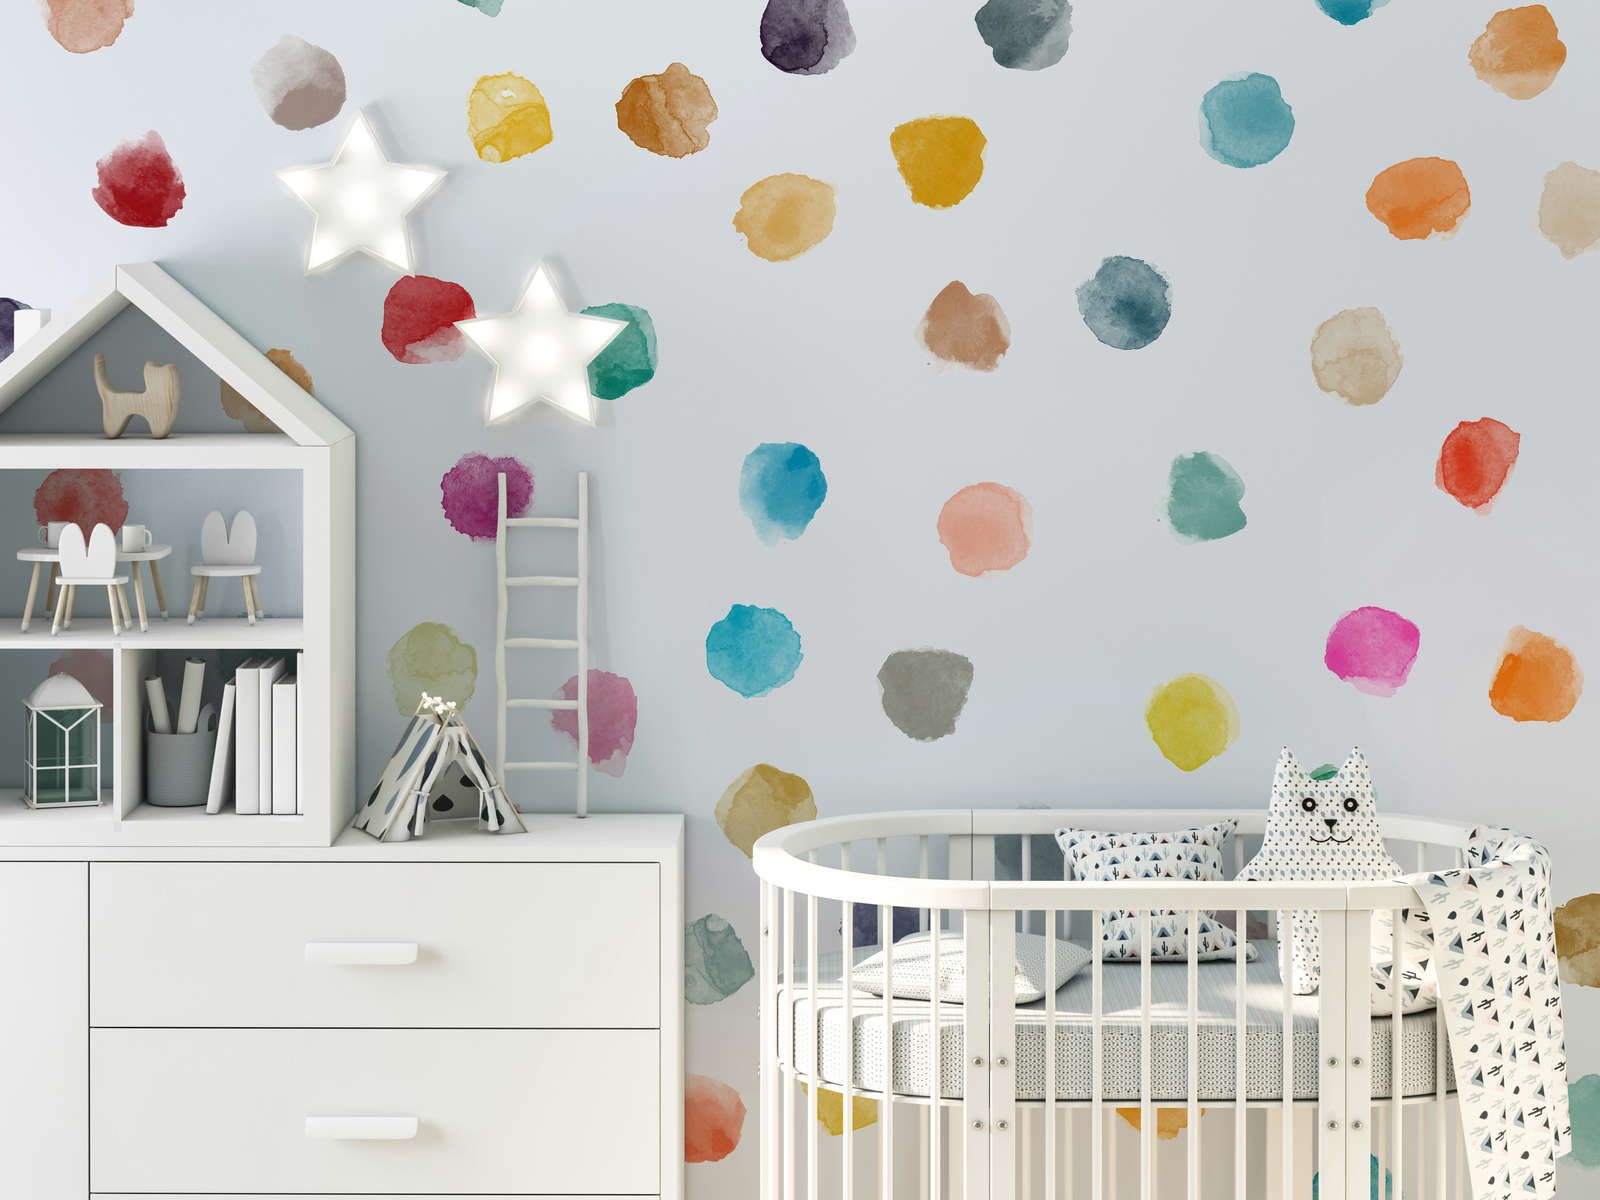             Fototapete fürs Kinderzimmer mit bunten Punkten – Glattes & leicht glänzendes Vlies
        